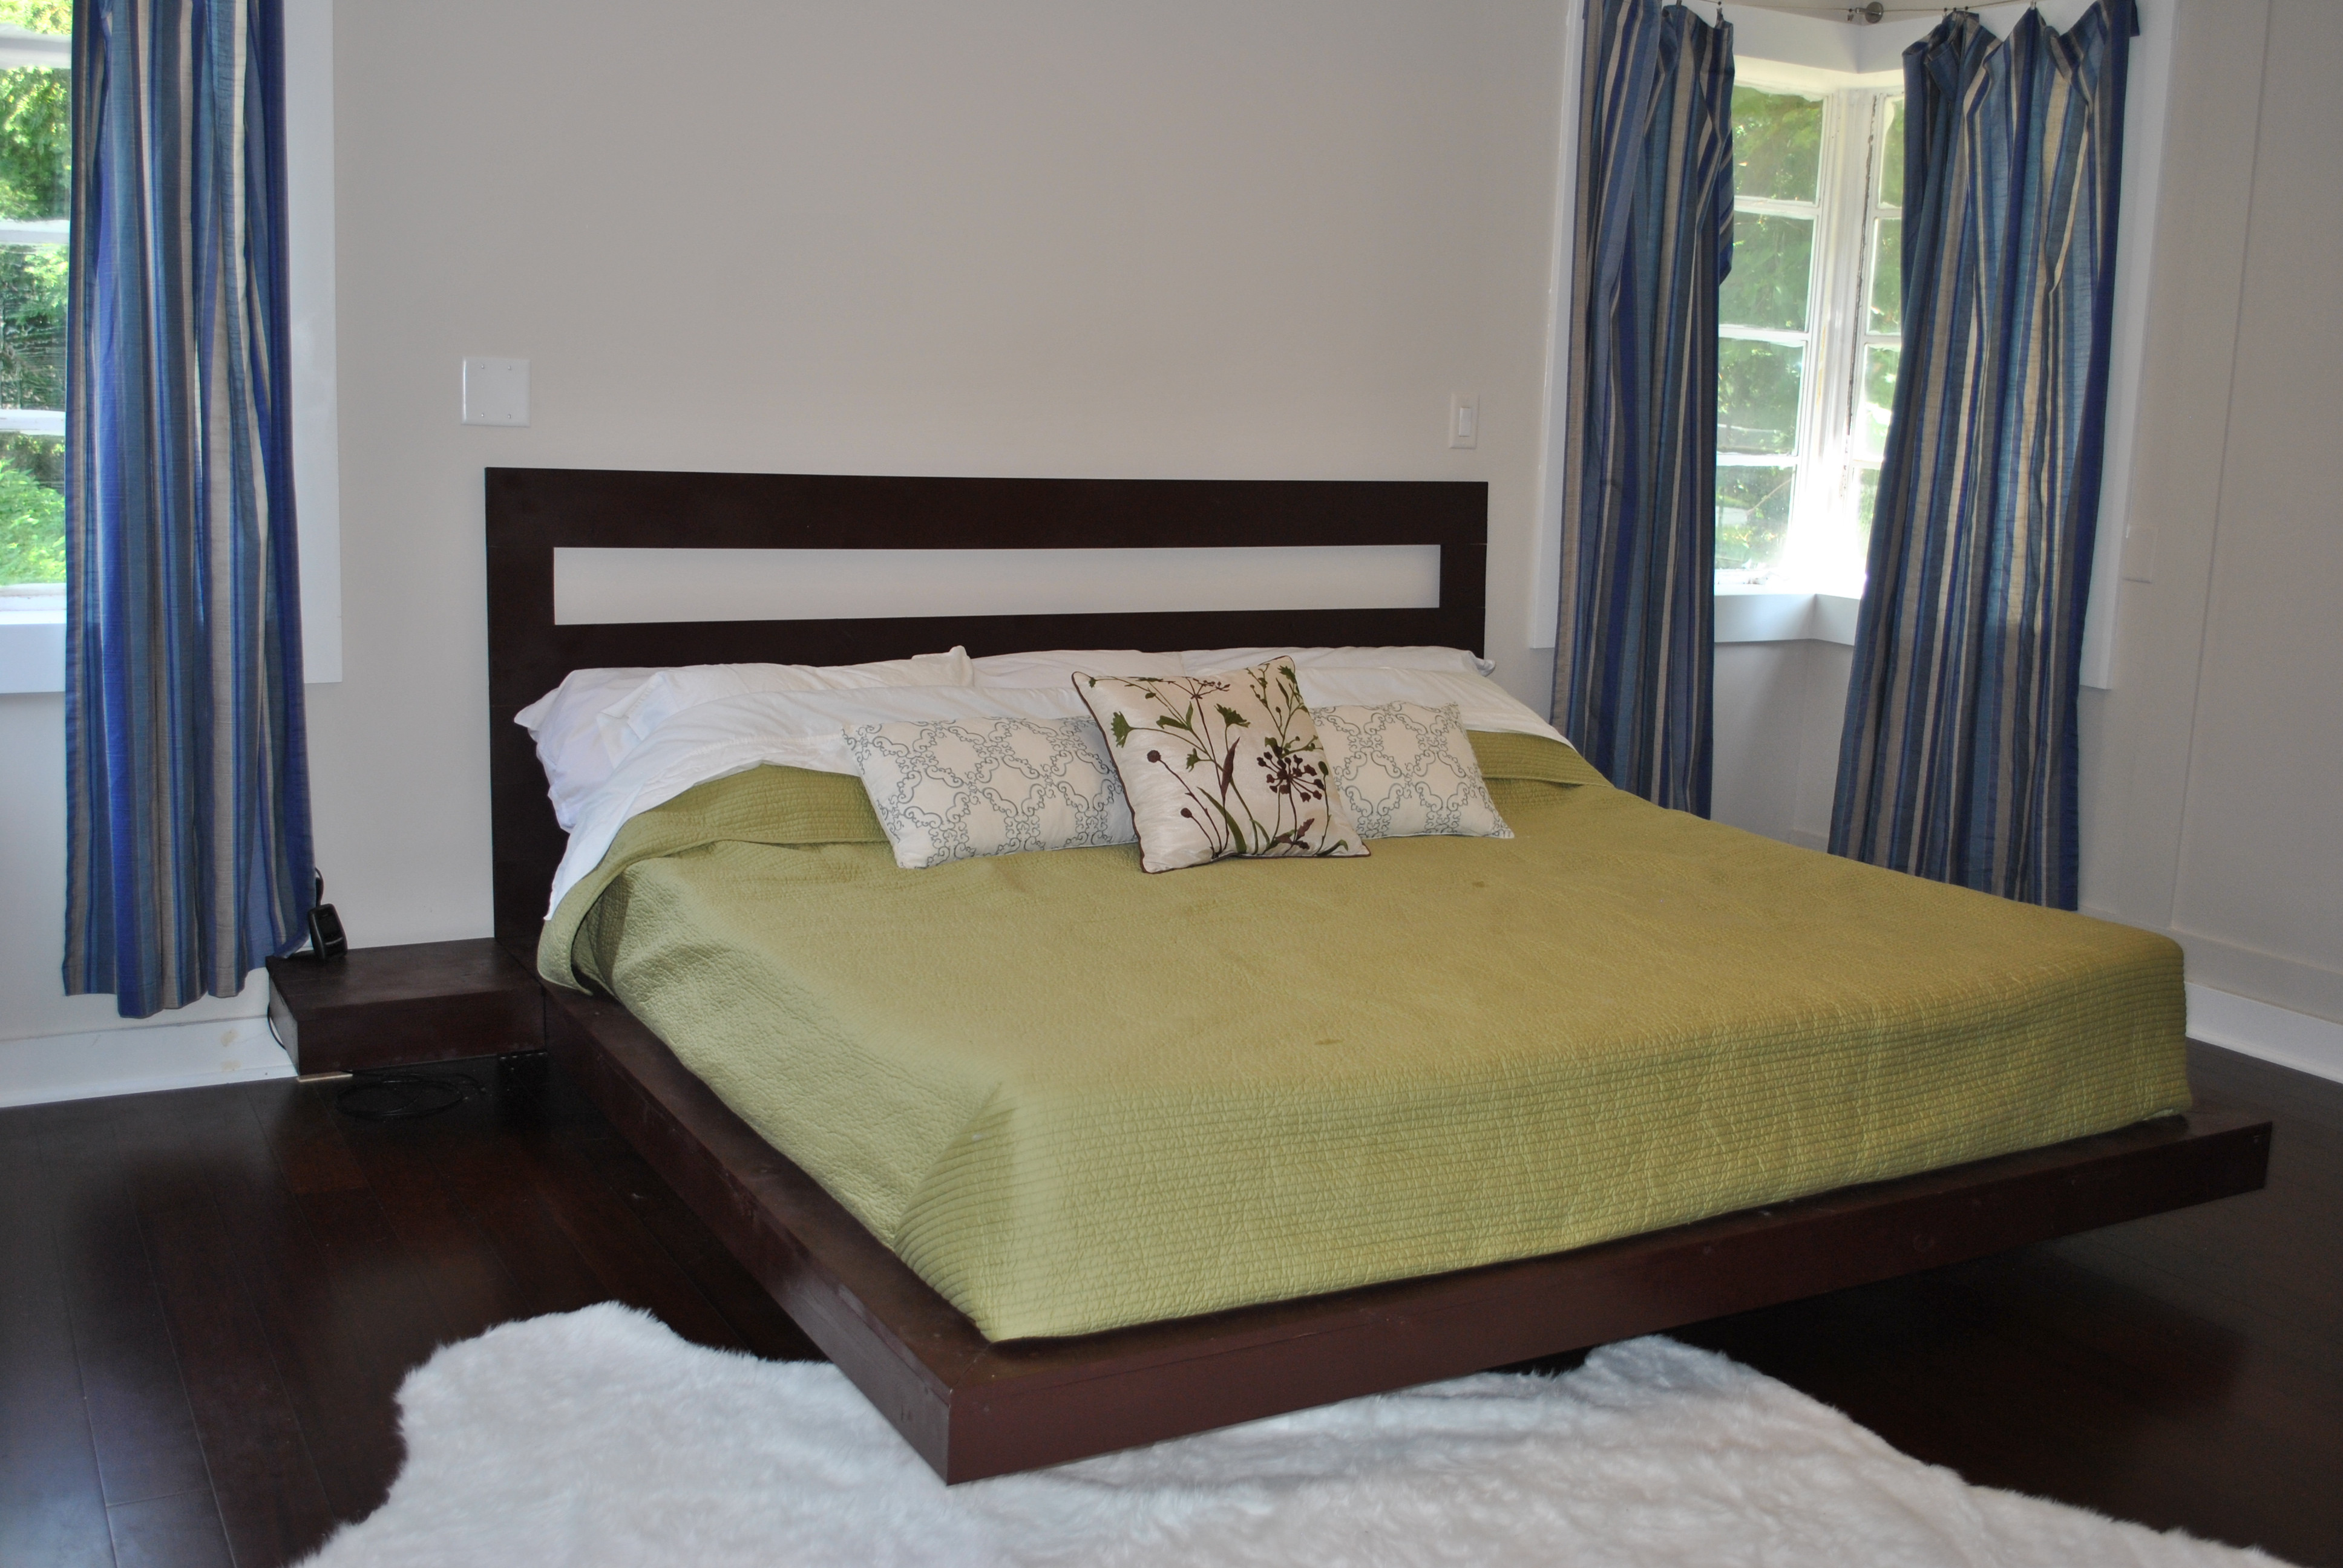 DIY King Platform Bed Plans
 Project $26 King Bed Frame